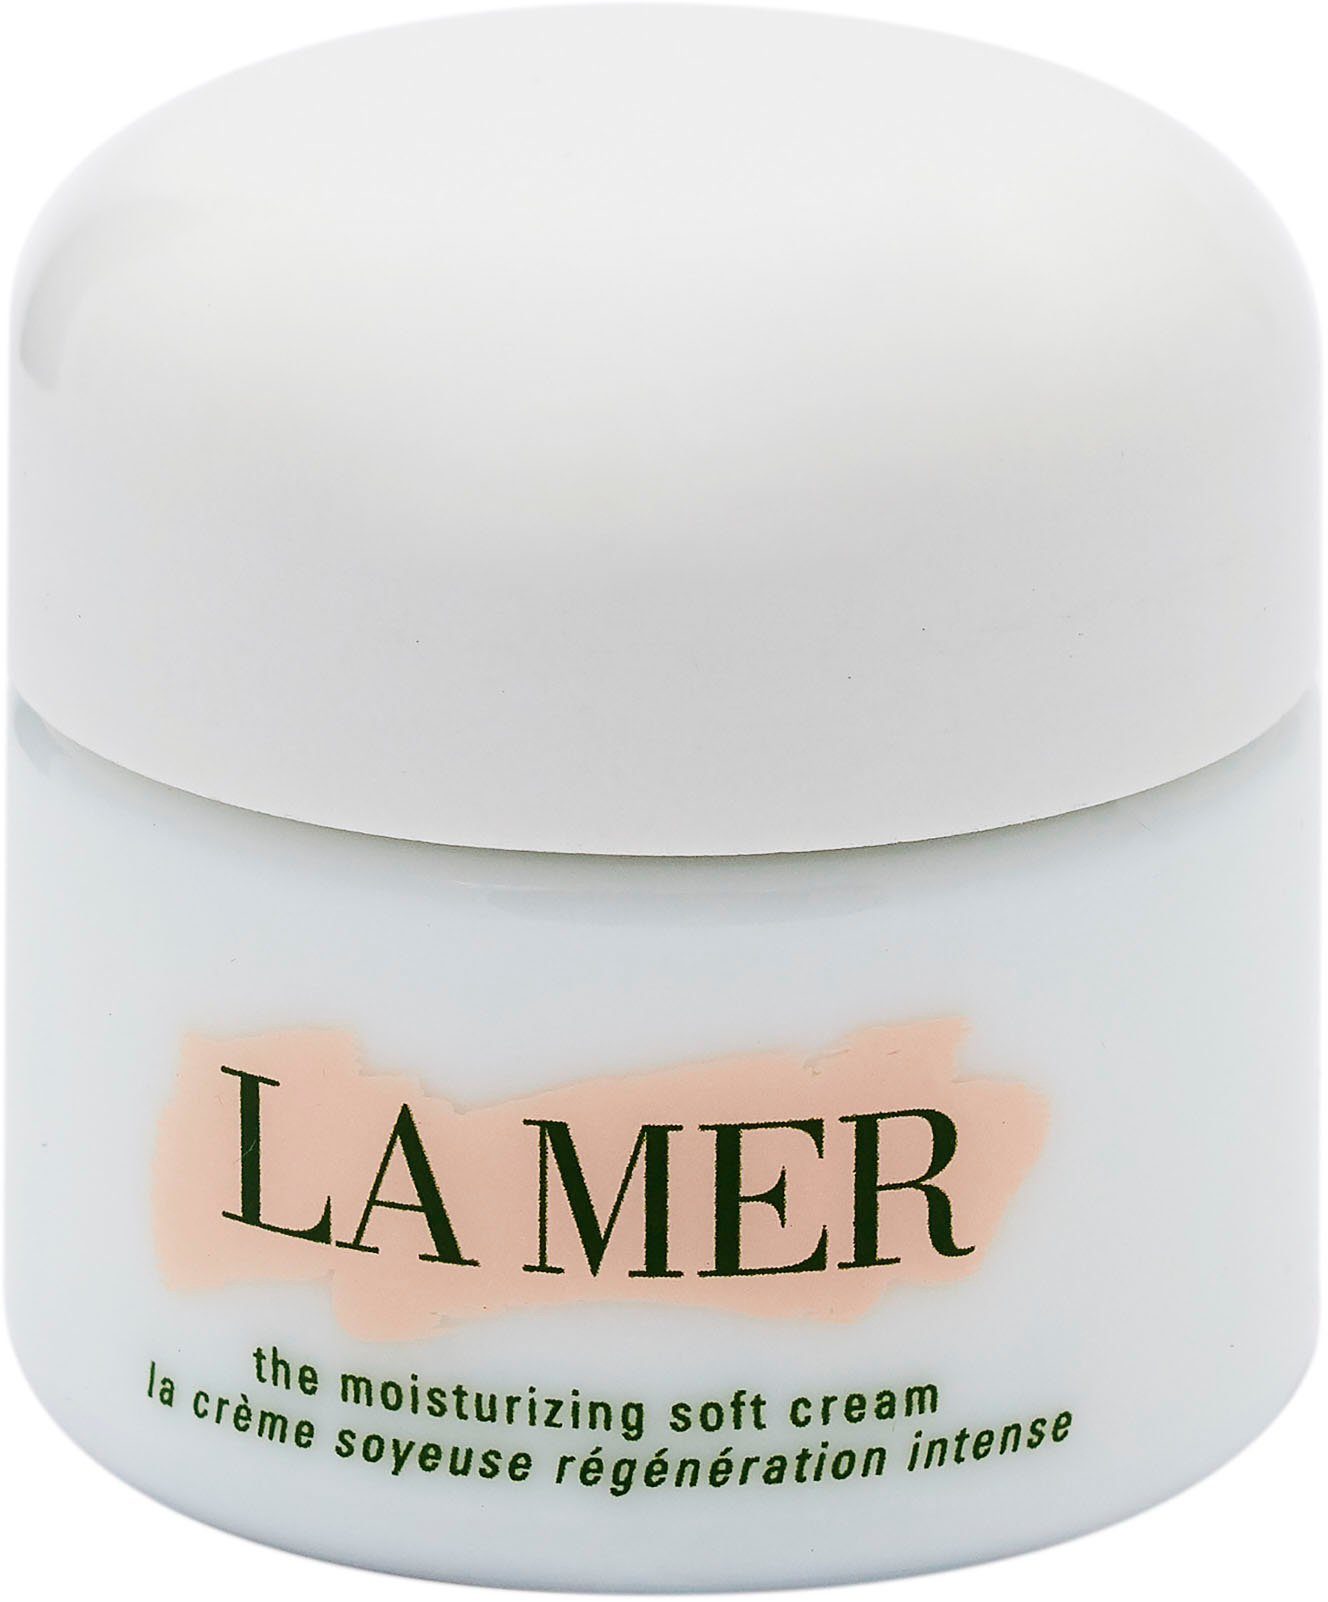 The Soft Gesichtspflege Moisturizing Gesichtscreme MER LA Cream